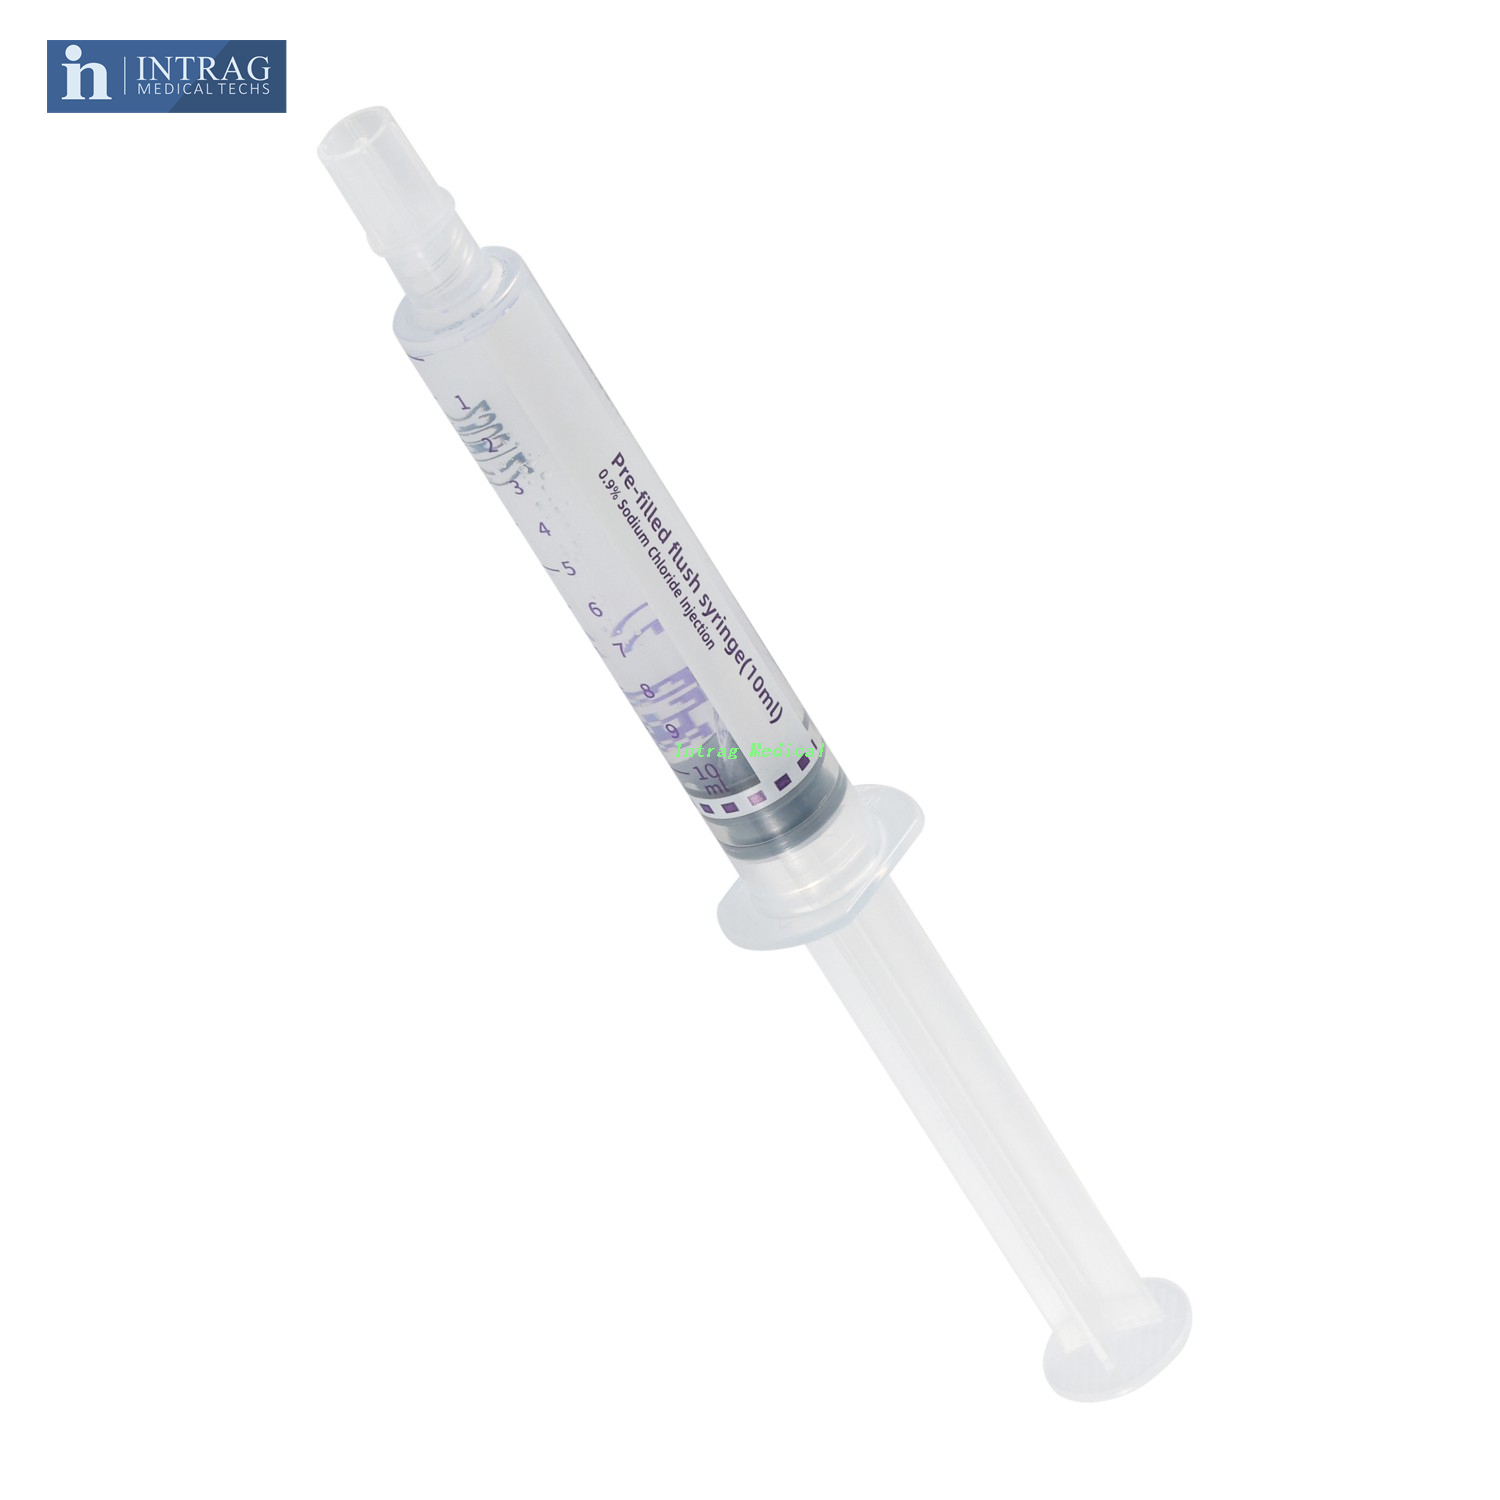 Pre-Filled Normal Saline Flush Syringe (3ml,5ml,10ml)